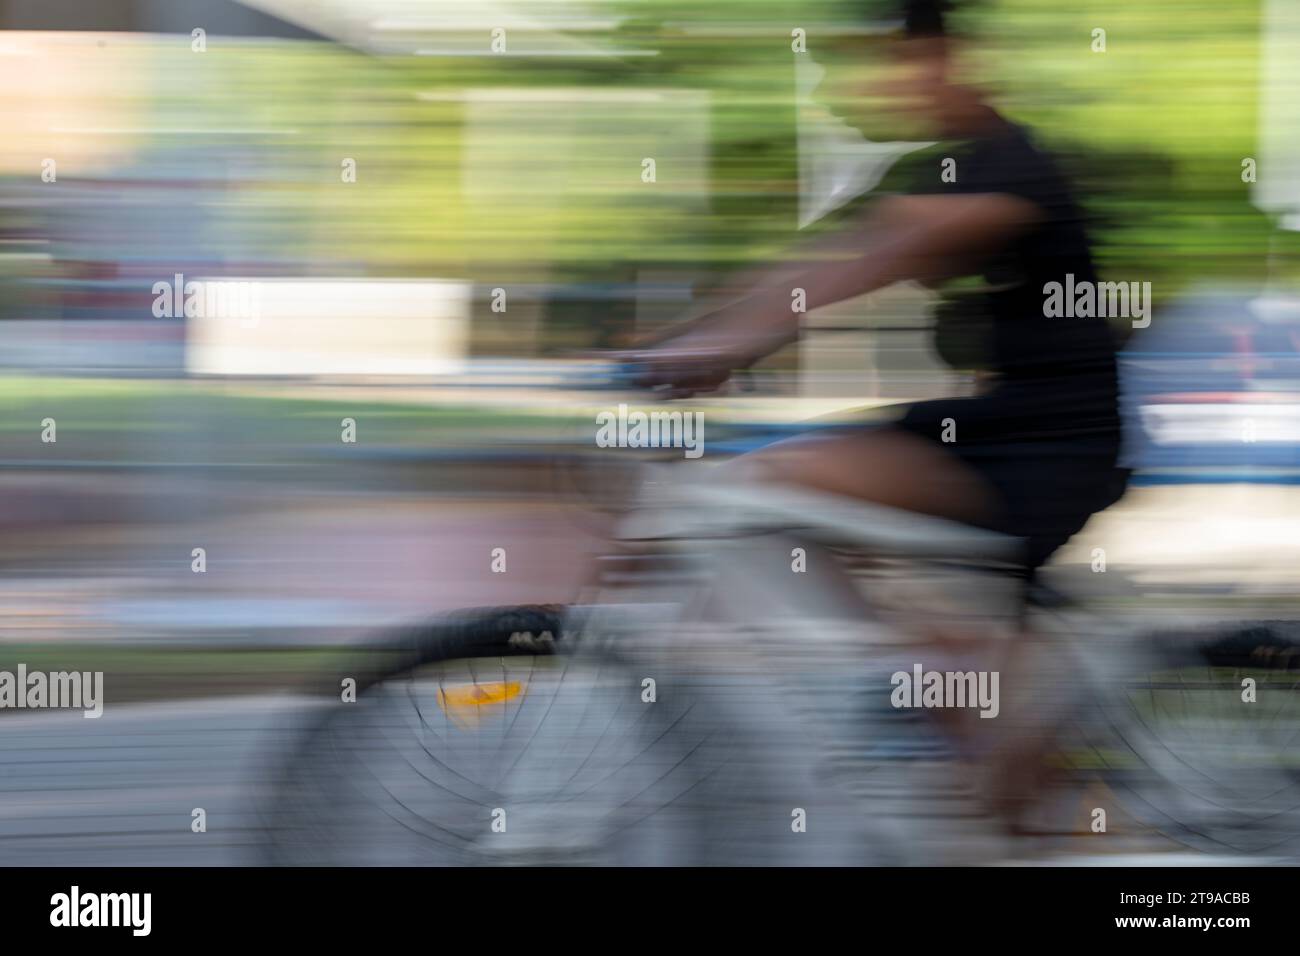 Geschwindigkeit, Bewegung und Radfahren. Verwendung von Kameraschwenken und niedriger Verschlusszeit, um einen Eindruck von Geschwindigkeit und Bewegung in einer städtischen Umgebung zu vermitteln Stockfoto